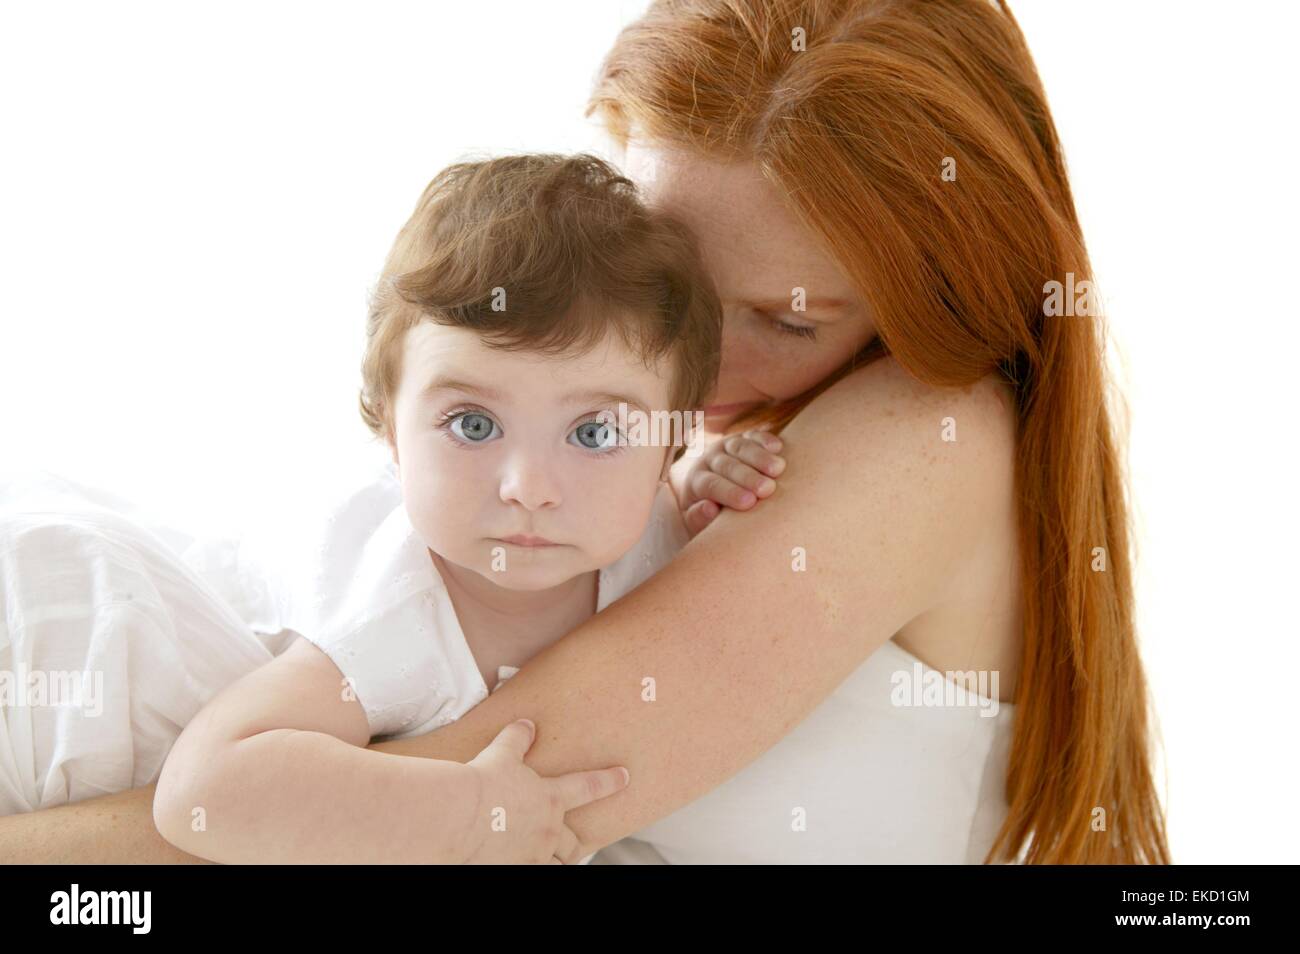 Redhead Mom Pics